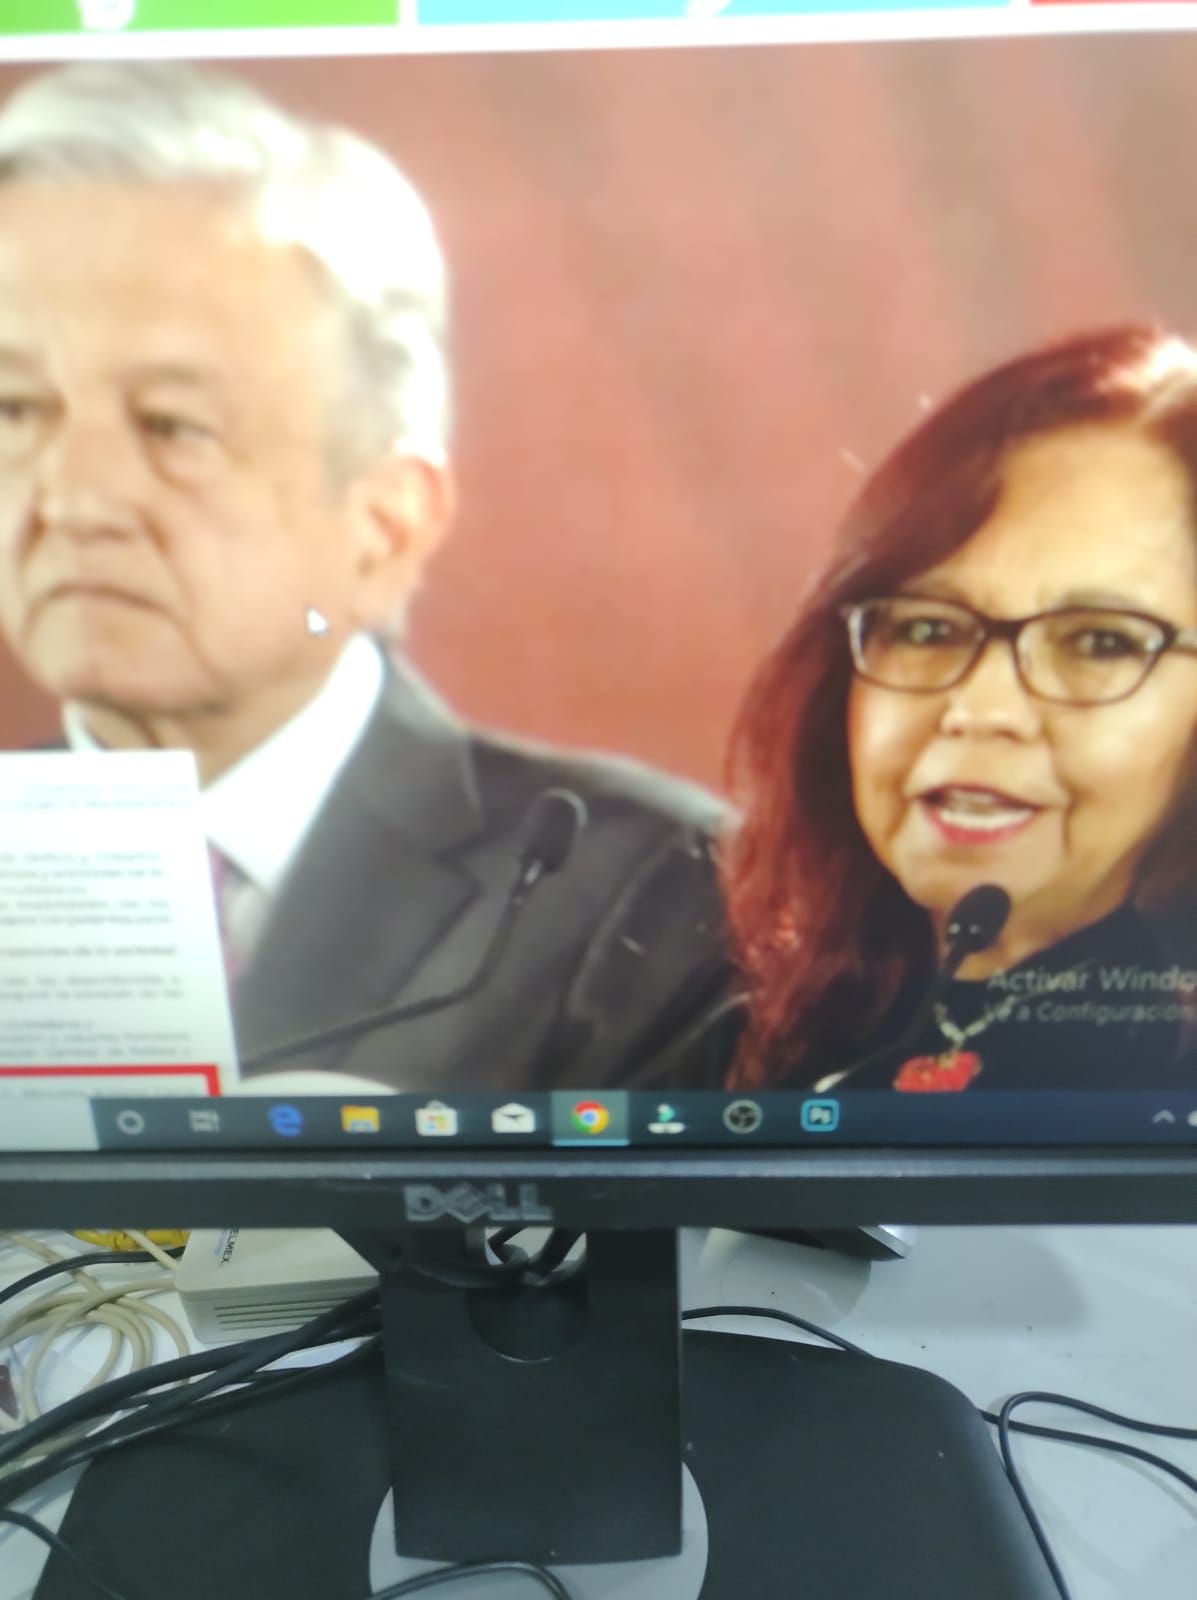 #El presidente de la República presentó información fiscal y personal del periodista Carlos Loret de Mola
